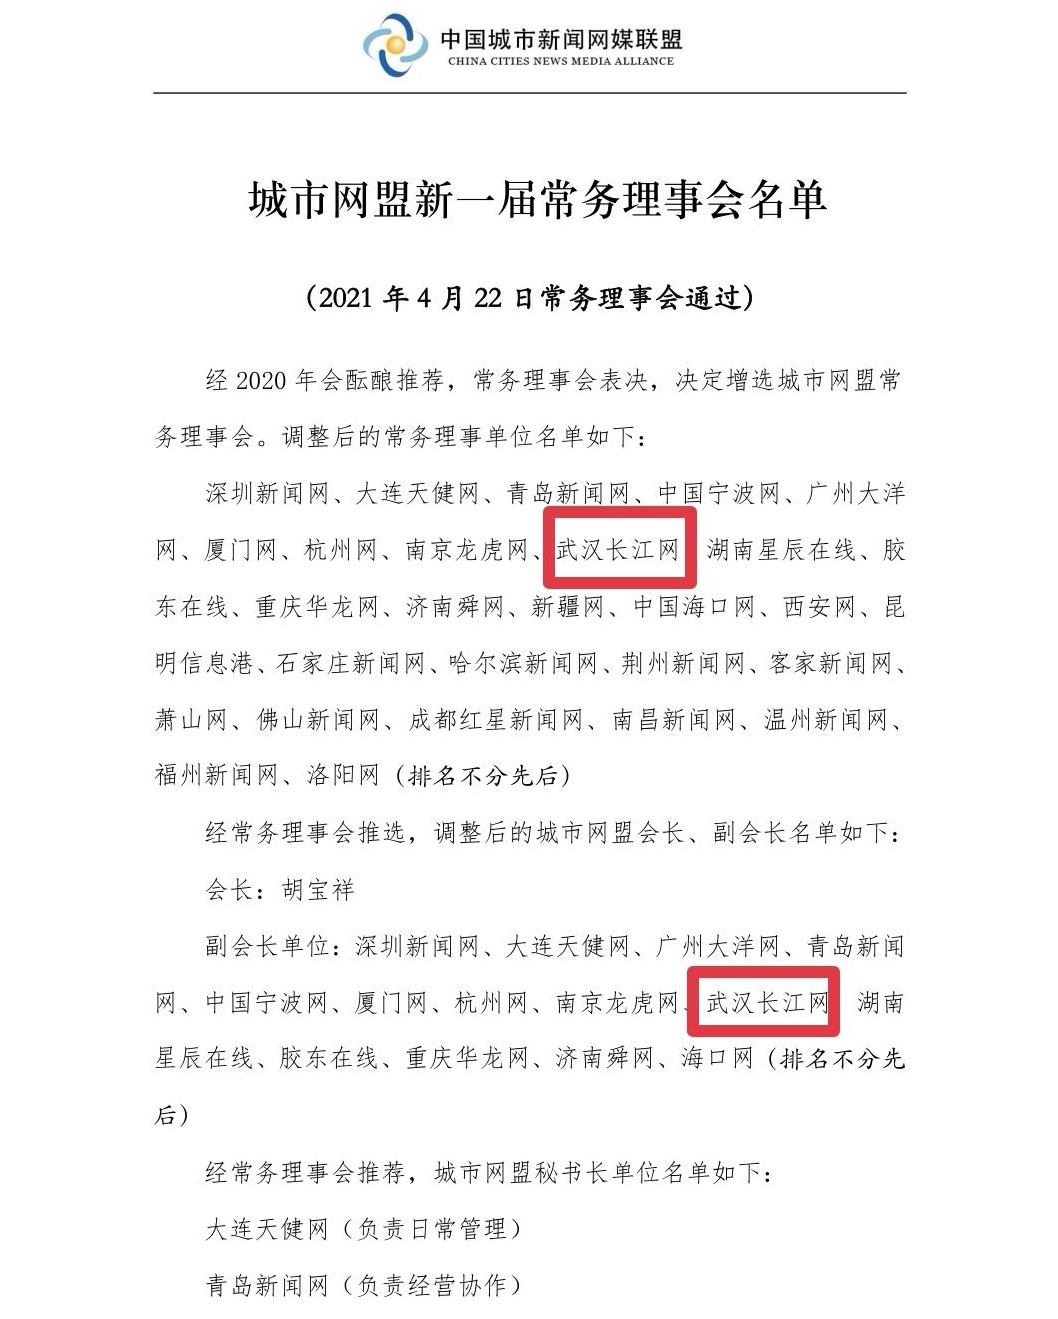 长江网当选中国城市新闻网媒联盟副会长单位